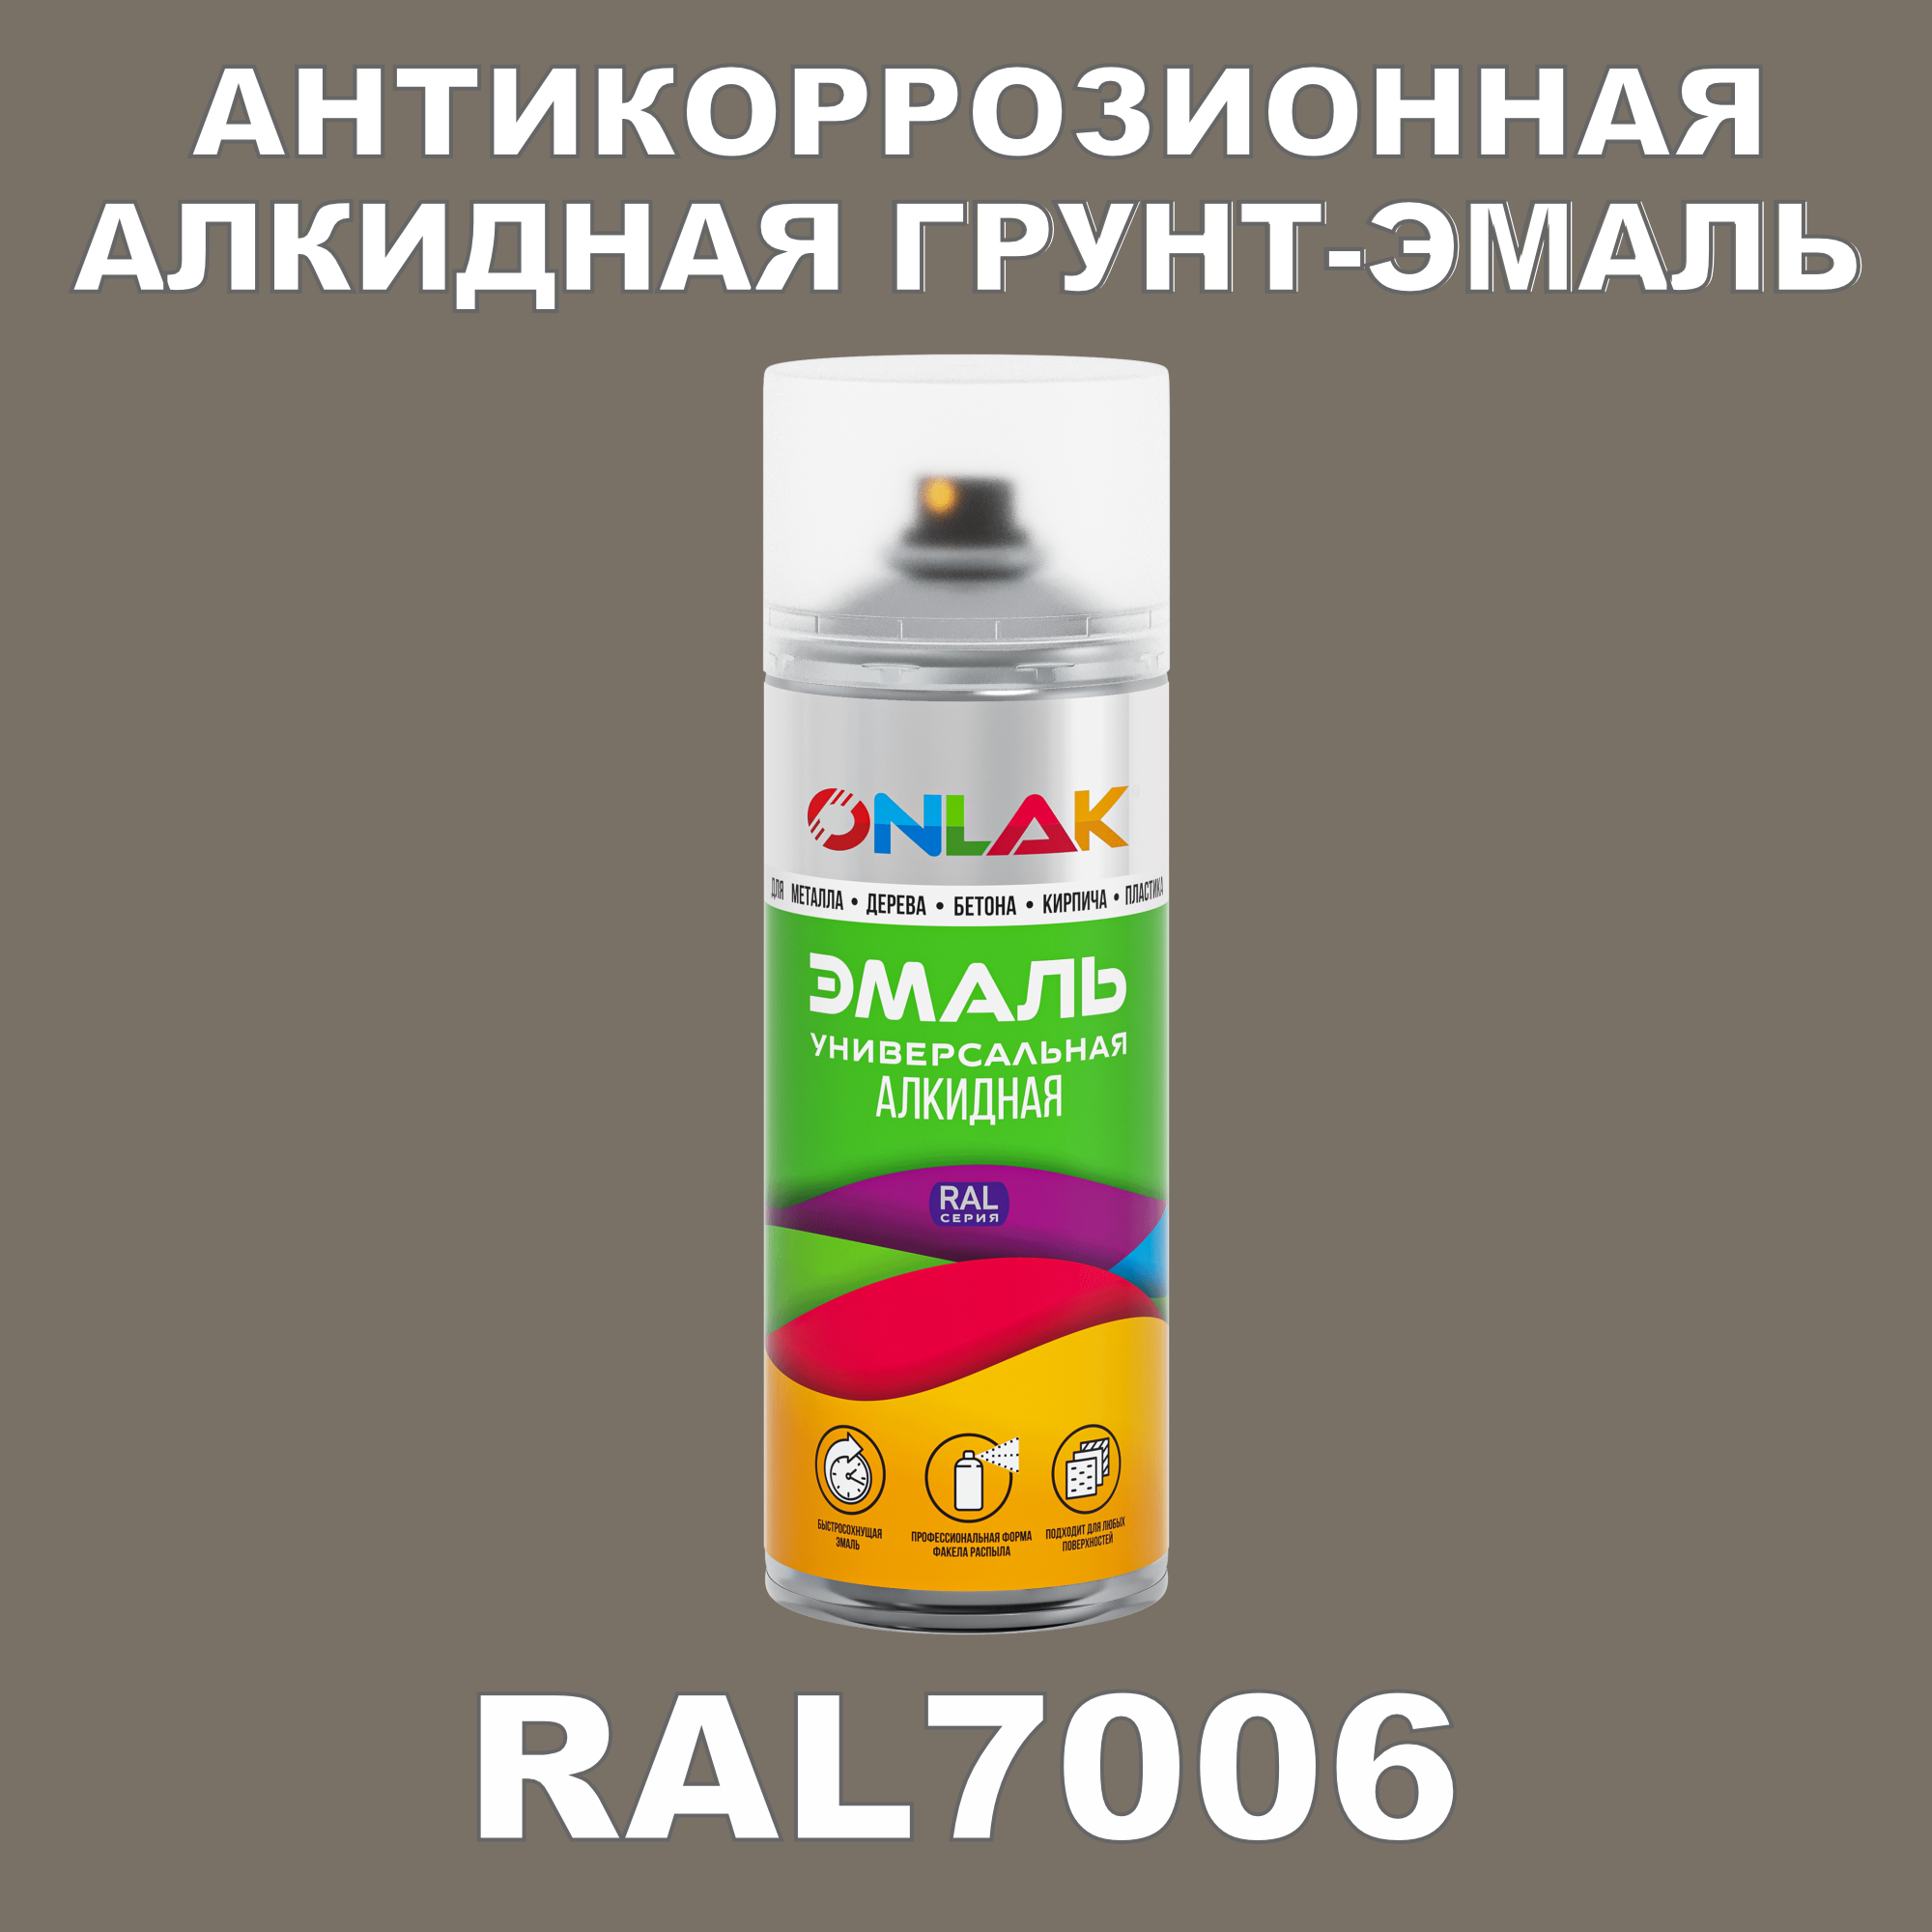 Антикоррозионная грунт-эмаль ONLAK RAL7006 полуматовая для металла и защиты от ржавчины